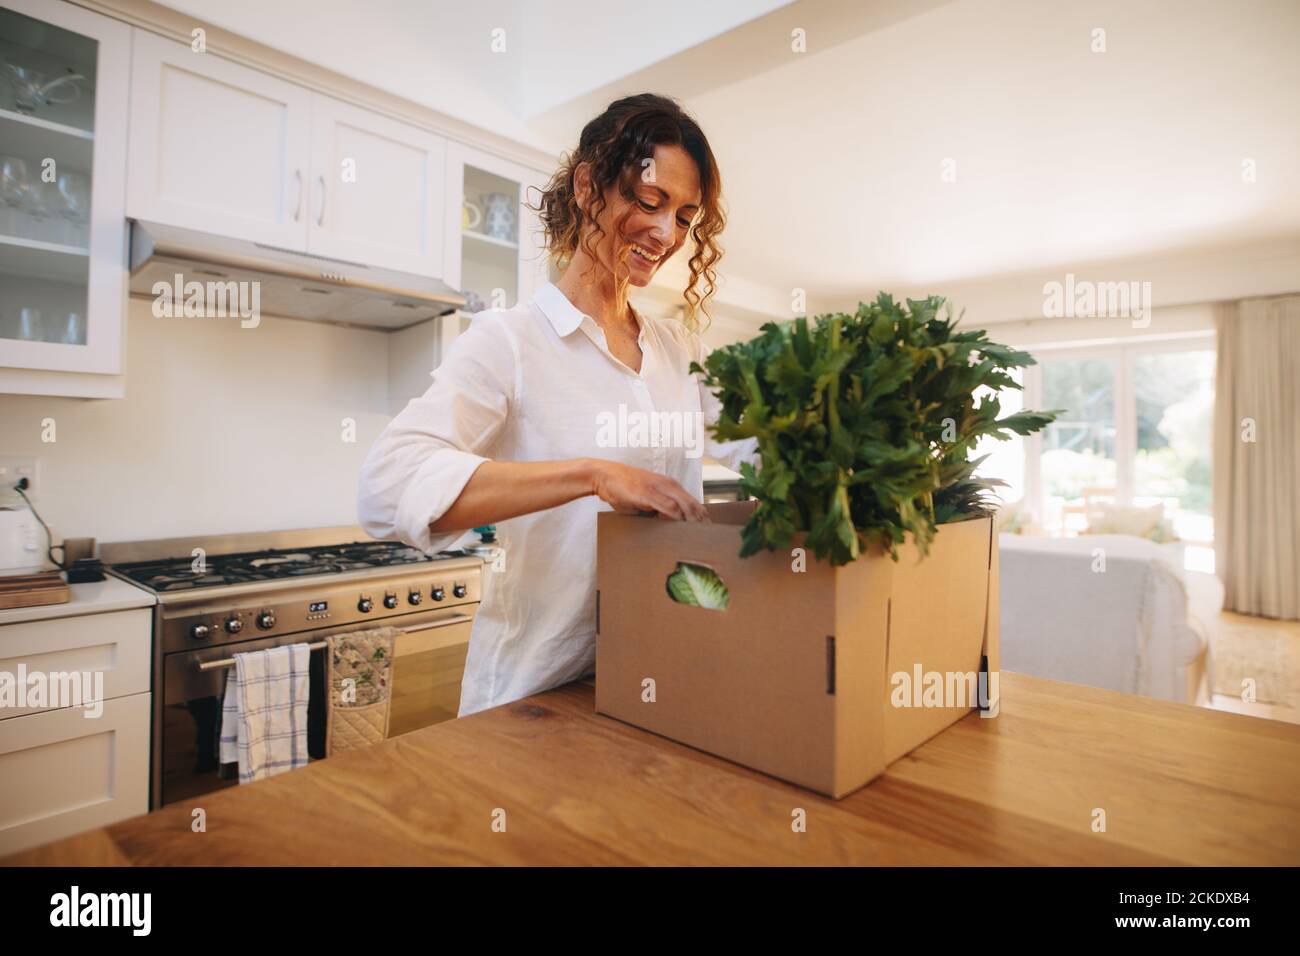 Frau überprüft das frische Gemüse und Obst in einer Lieferbox. Lächelndes Weibchen mit einer Schachtel voller frischem und biologischem Gemüse. Stockfoto